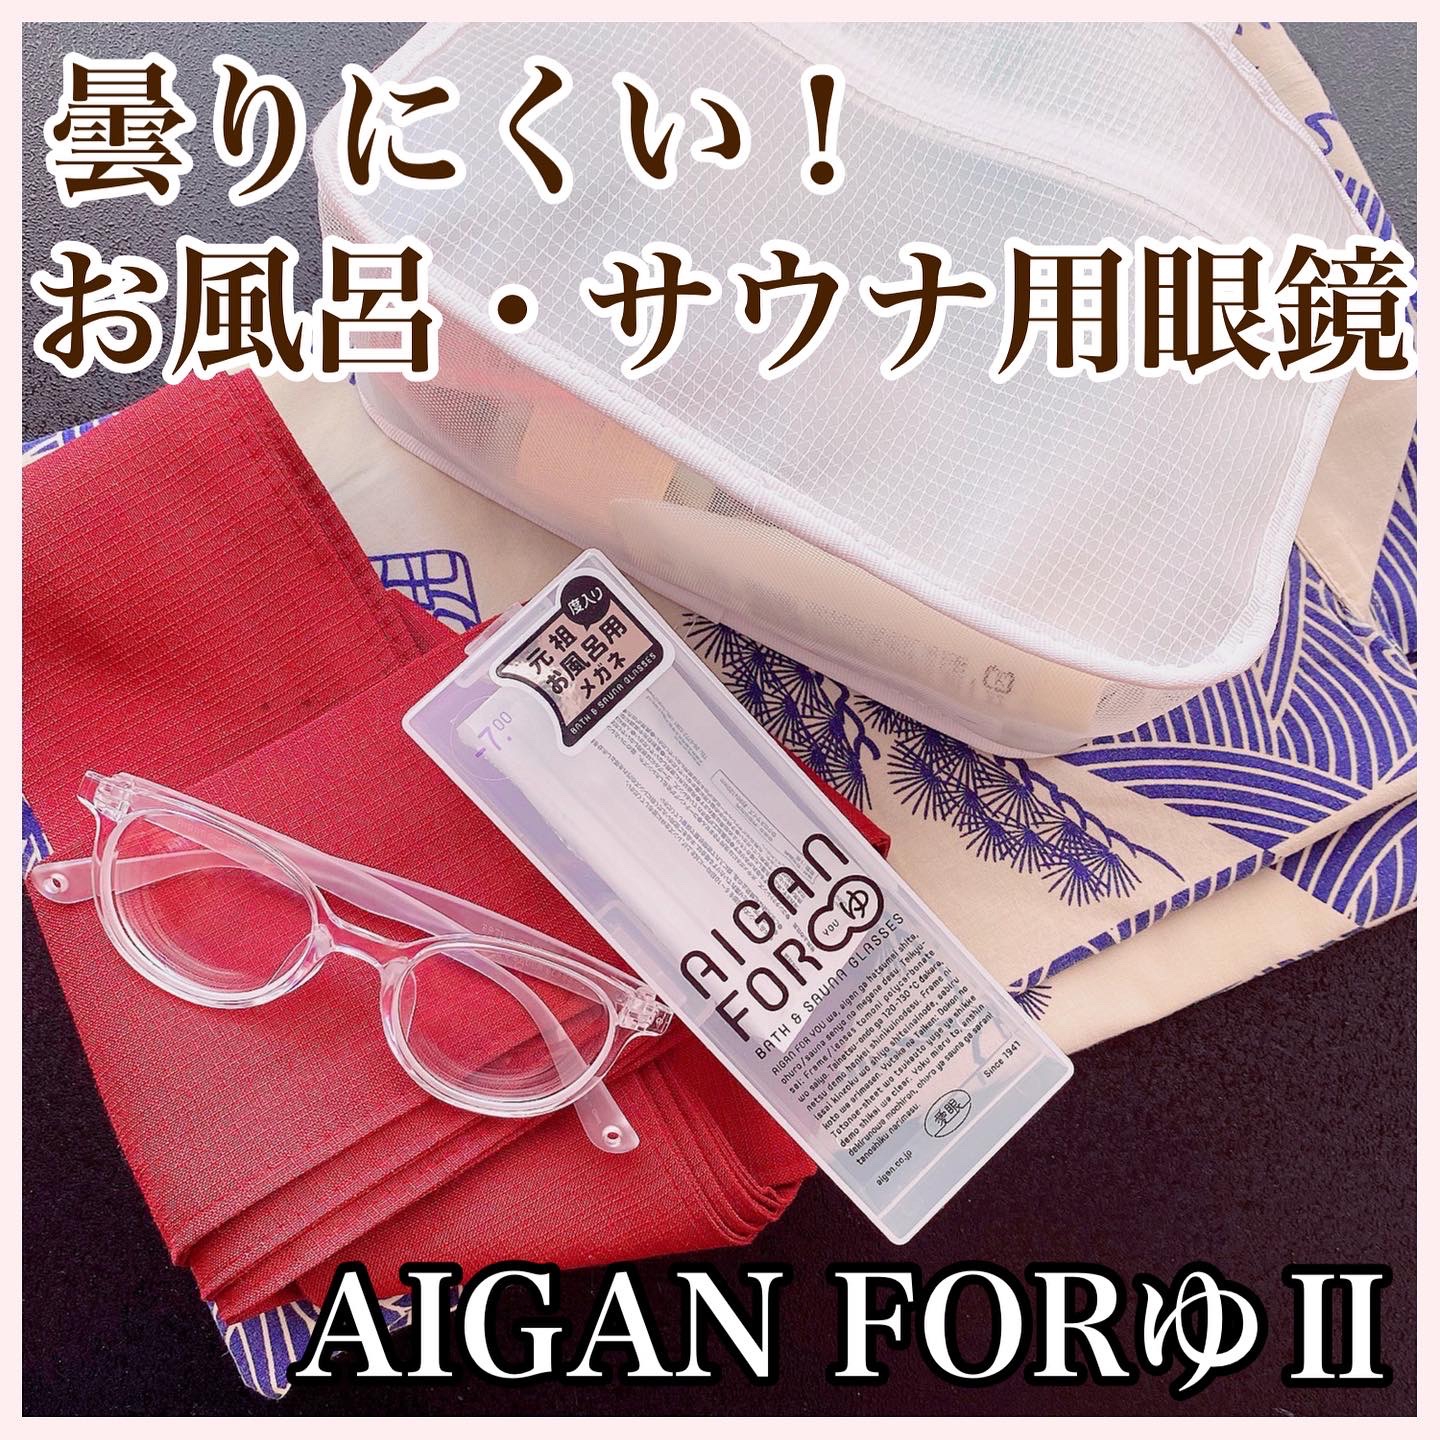 お風呂・サウナ専用メガネ AIGAN FORゆⅡを使ったfuka712さんのクチコミ画像6